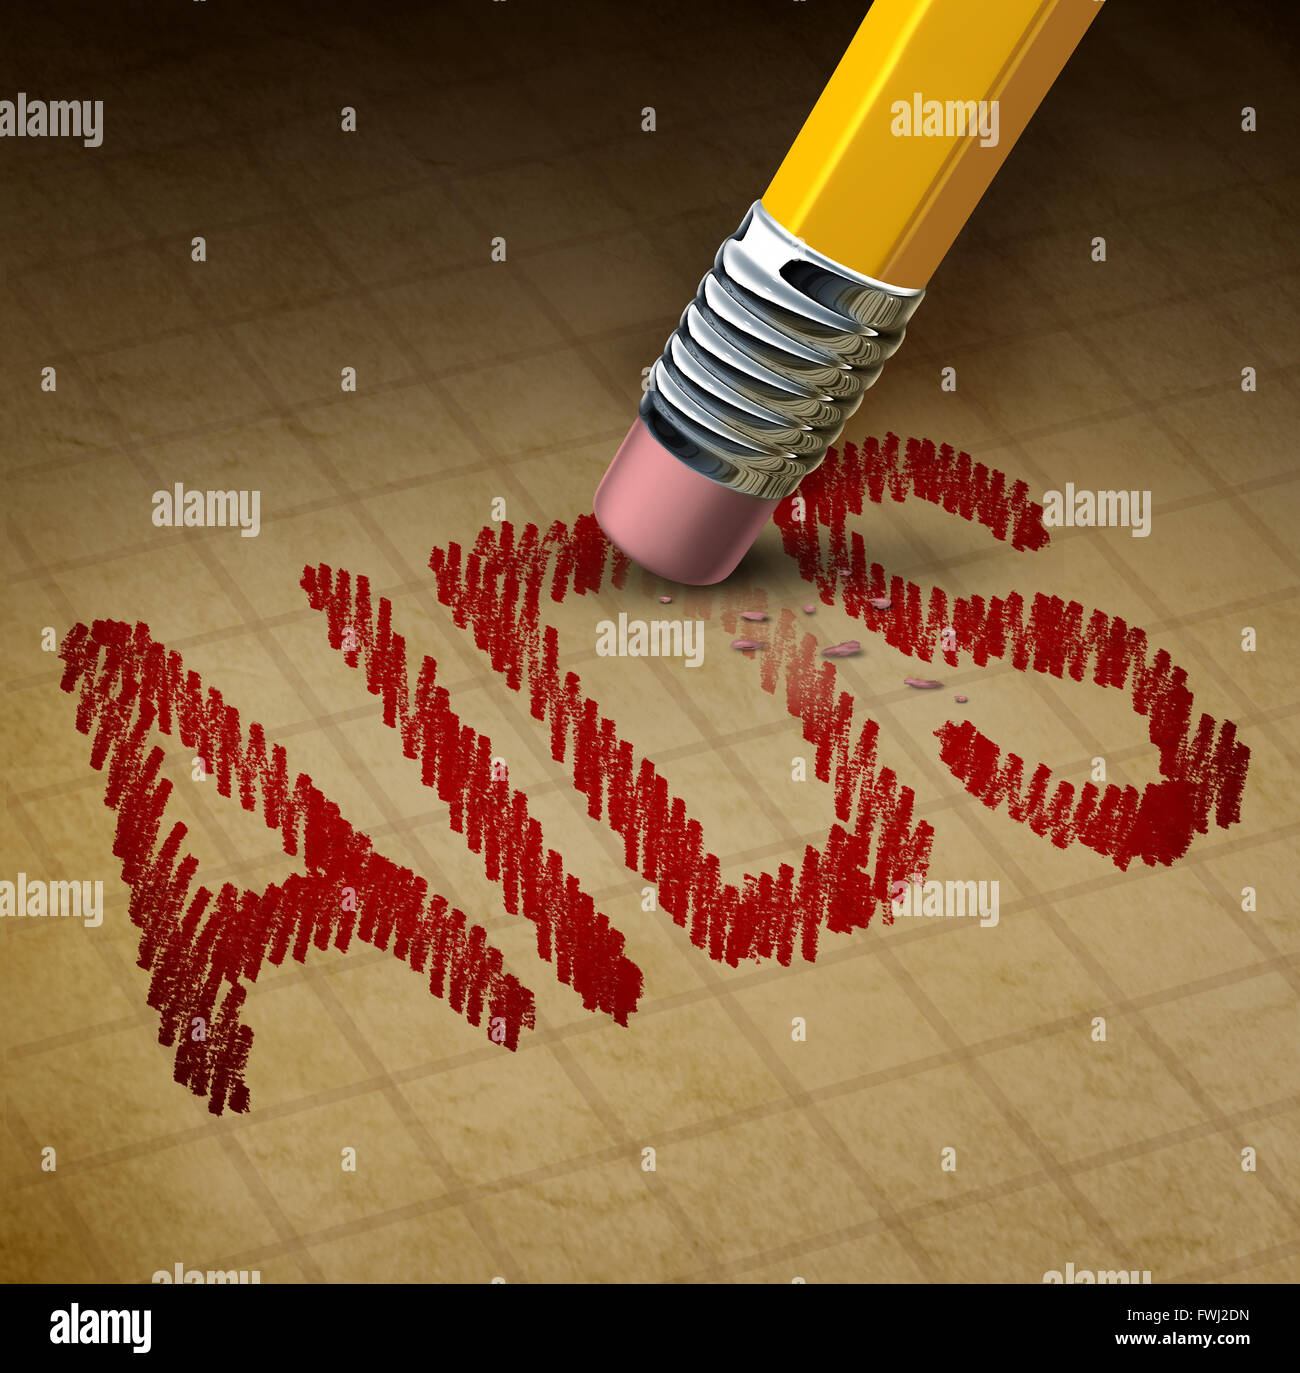 La lotta contro l'Aids e Hiv o il virus di immunodeficienza umana nozione come un 3D illustrazione di una gomma da matita cancellazione di testo come healthcare Foto Stock